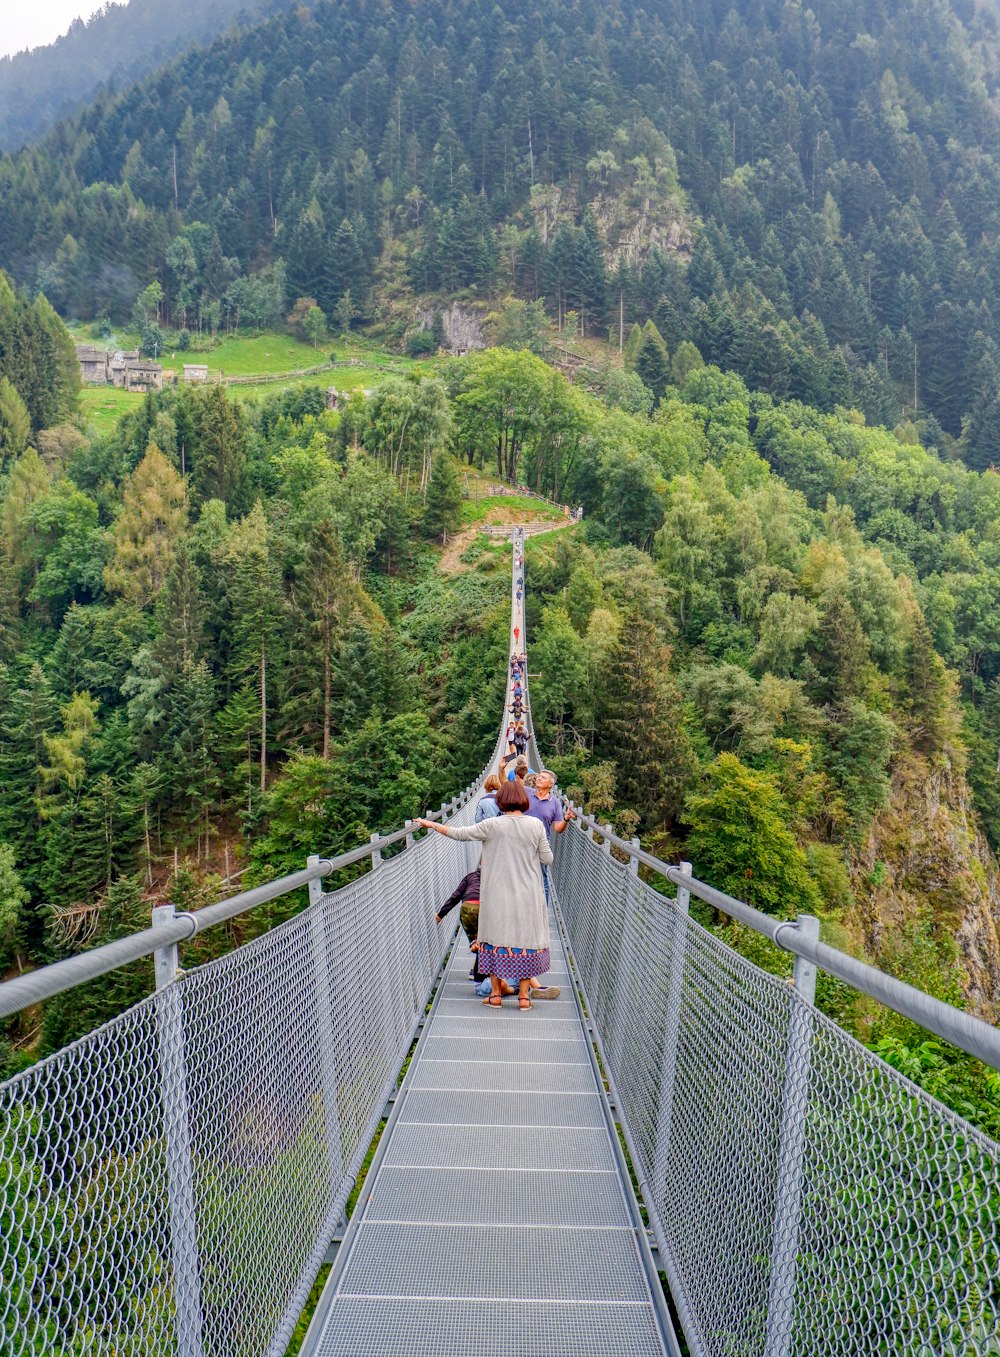 昼間、緑の木々に架かる吊り橋の上を歩く人々